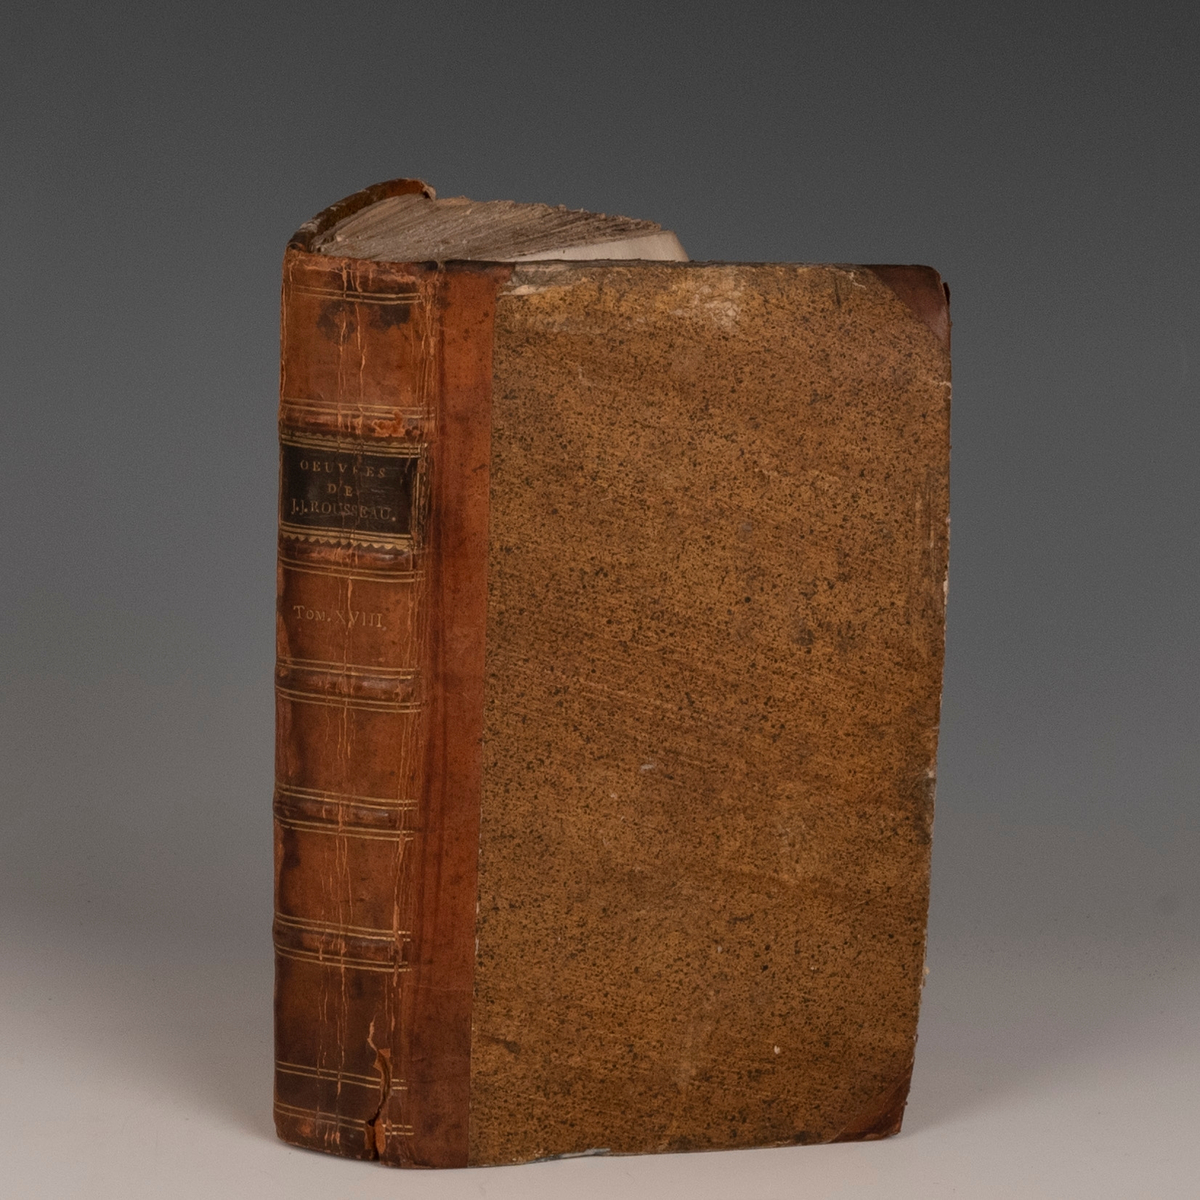 "Oeuvres de J.J. Rousseau XI-XIV, XVII-XVIII og XXII". Geneve 1781-82. Delskbd. fra samtiden. 12.